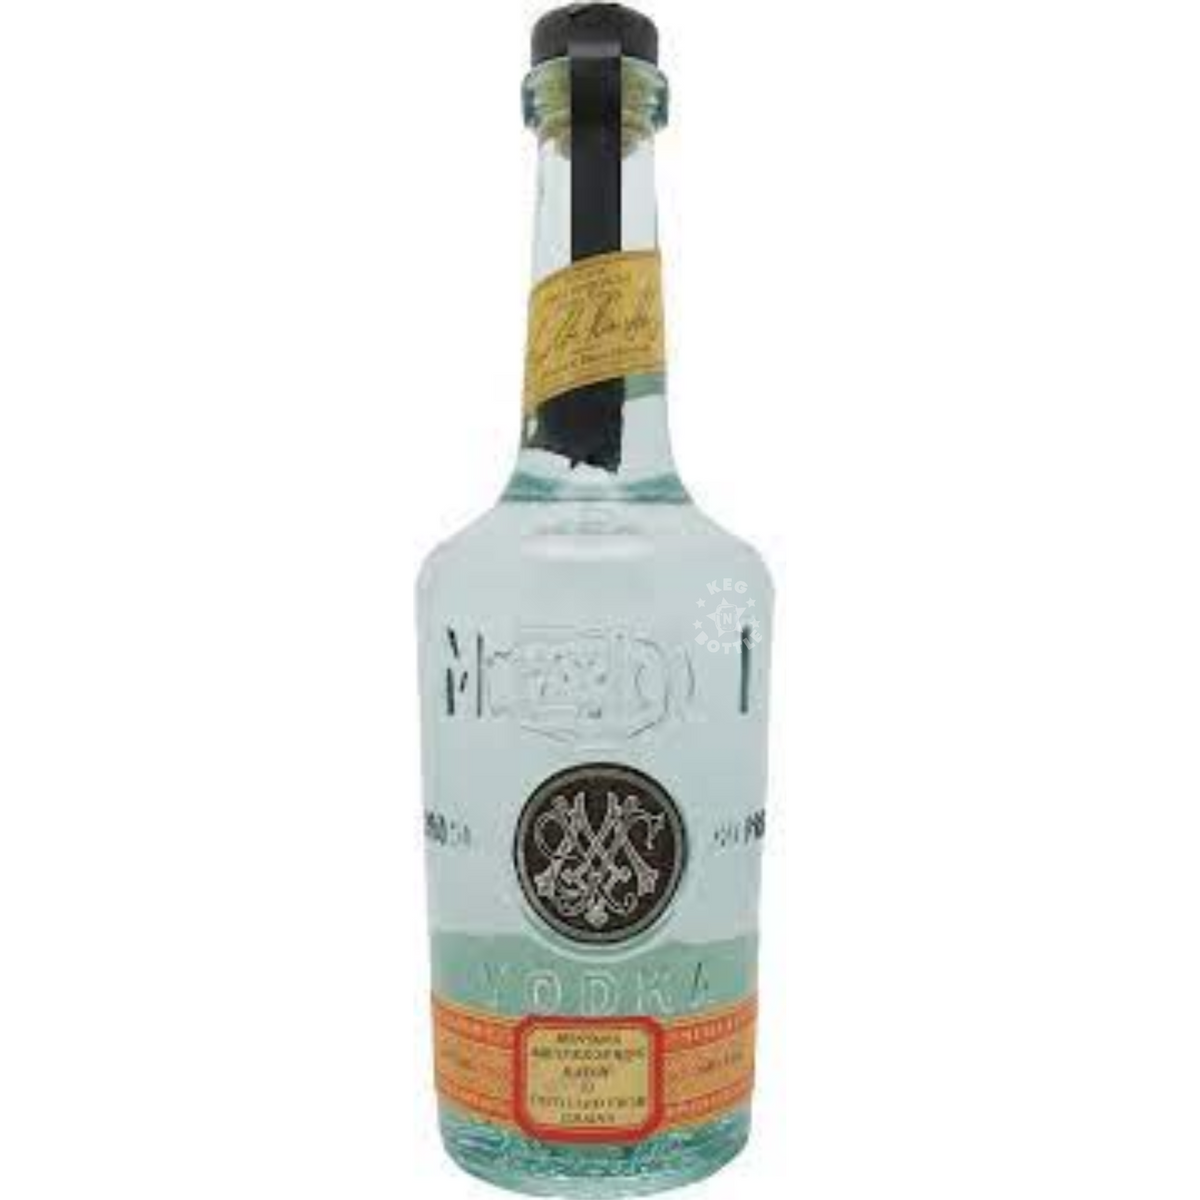 Meili Montana Aquifer Vodka (750 ml) — Keg N Bottle